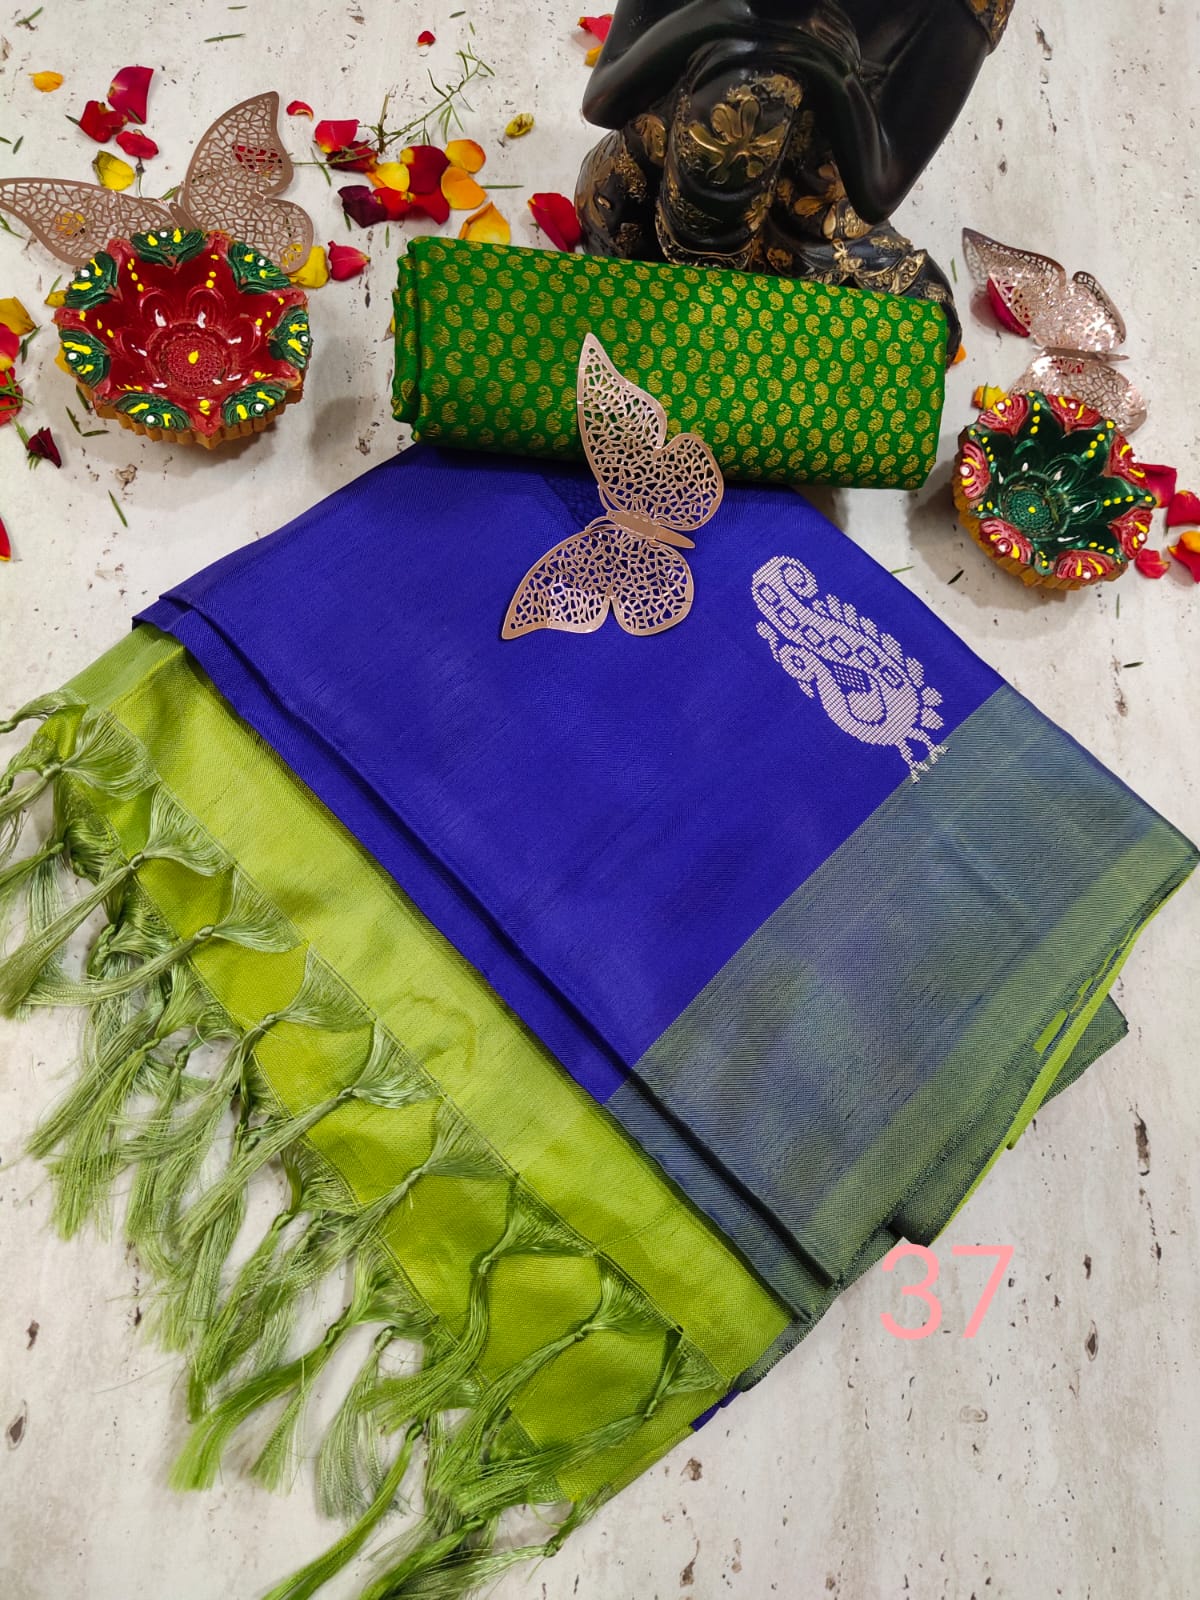 Vaalai silk saree with contrast border